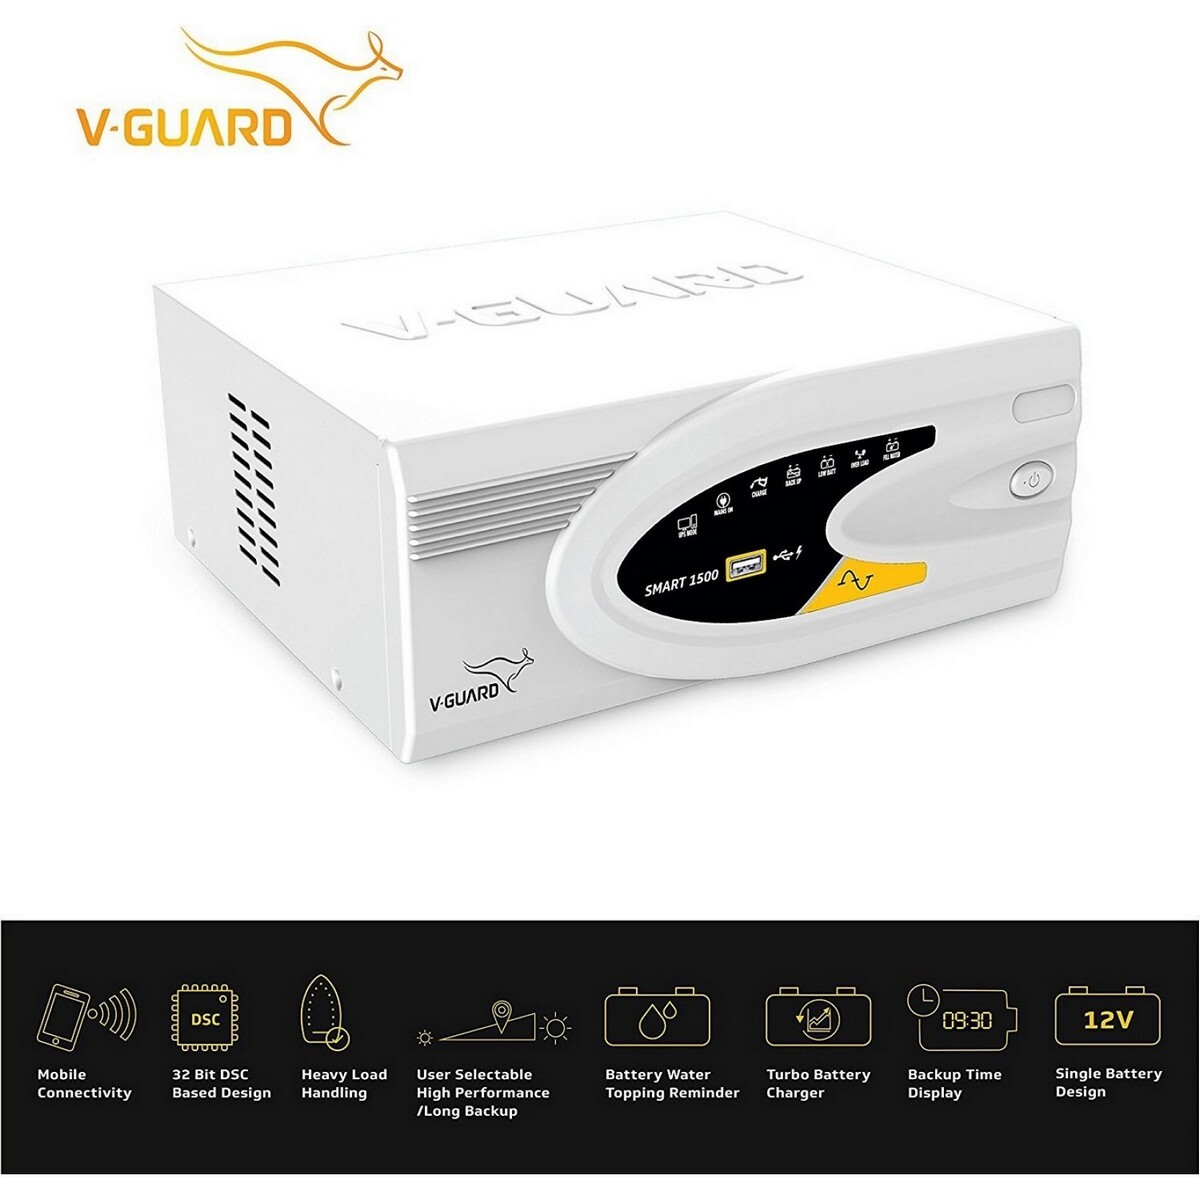 V-Guard Digital UPS Smart 1500